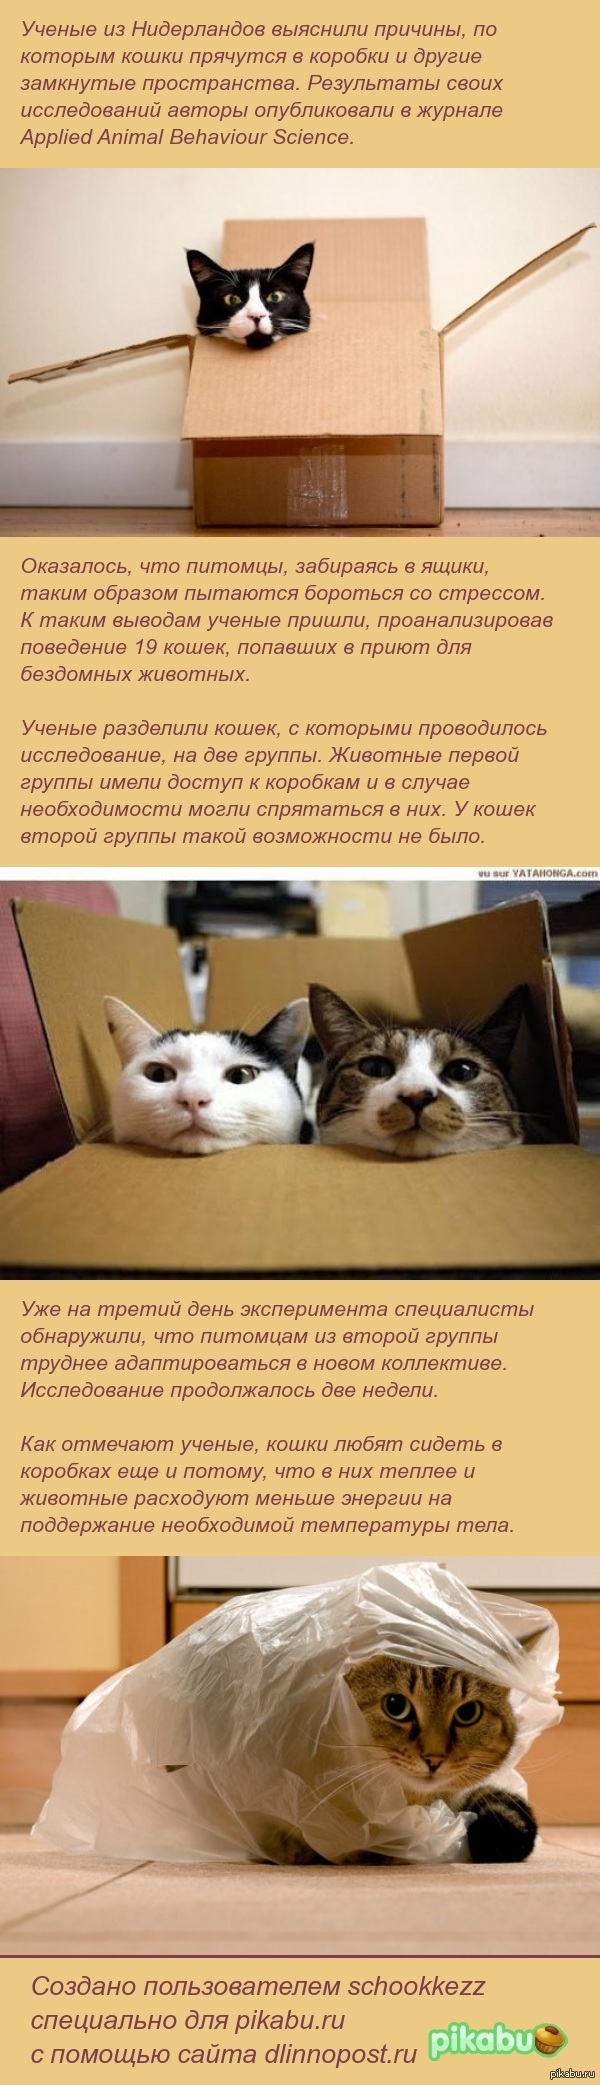 Биологи объяснили любовь кошек к коробкам. | Пикабу